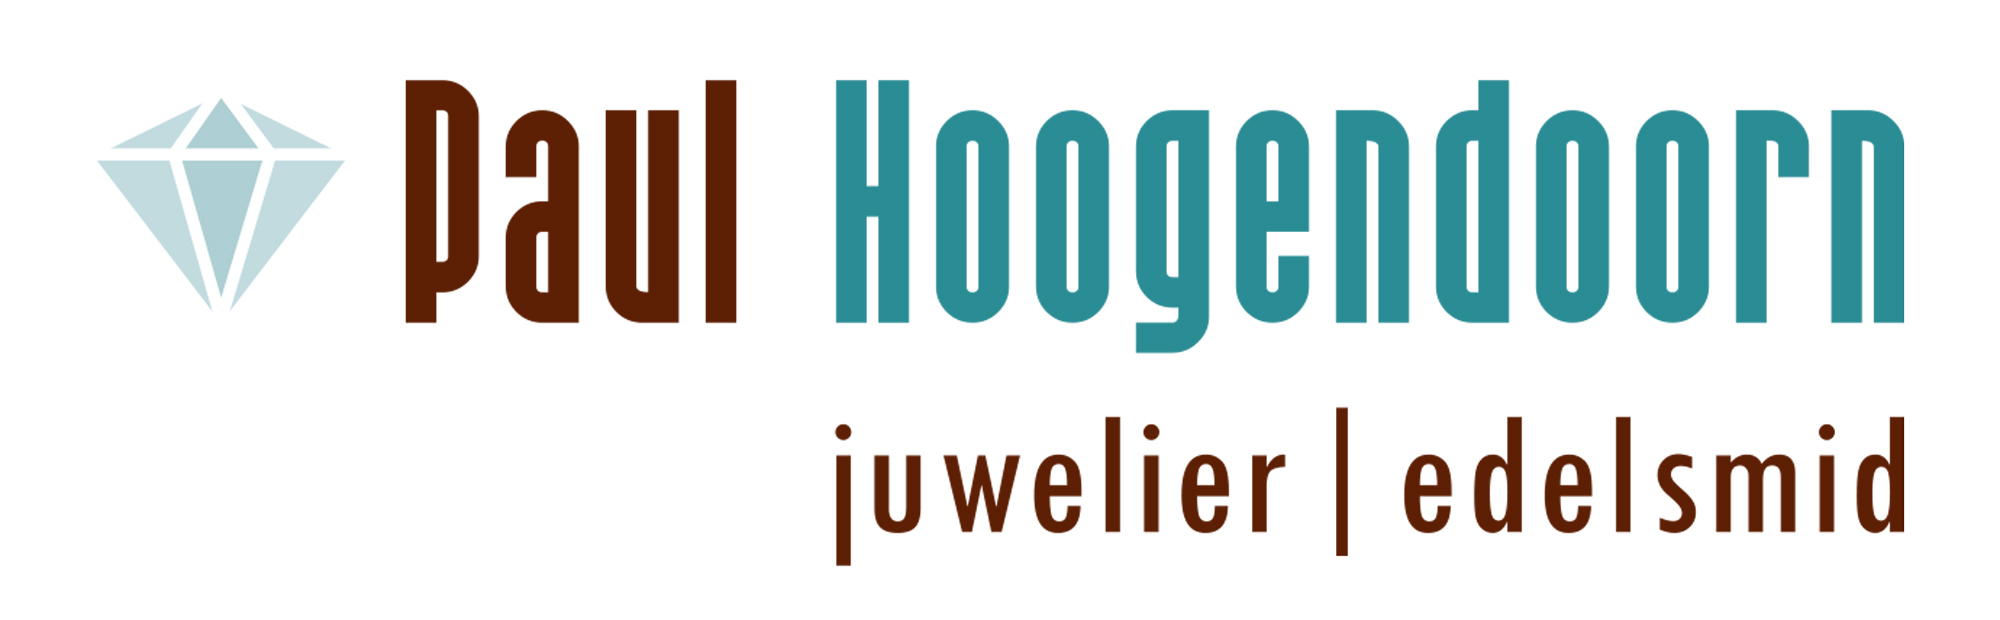 Juwelier Hoogendoorn